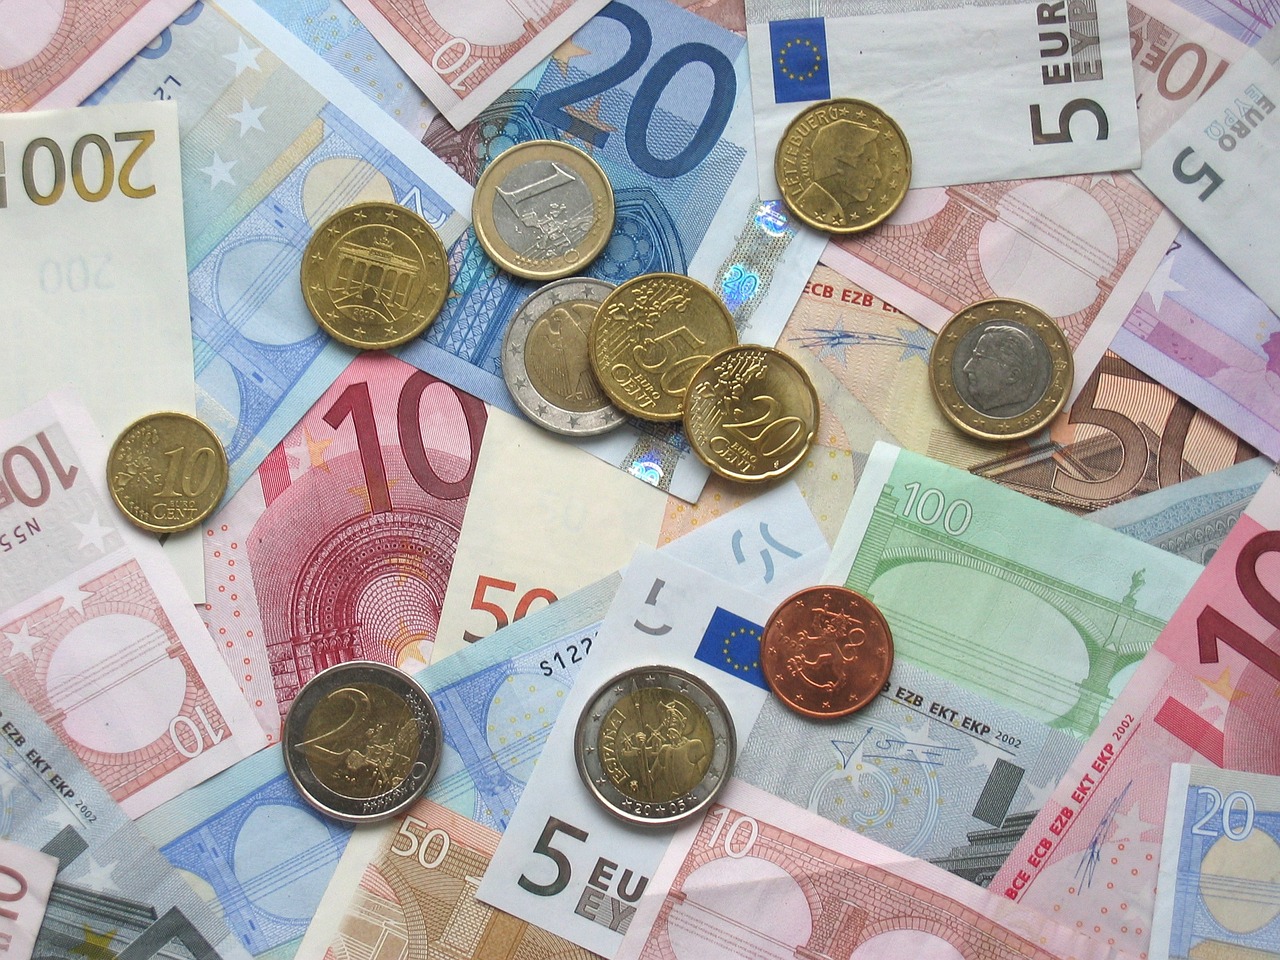 La remuneración ofrecida por el banco es del 5% TAE durante el primer año. Foto: Pixabay.